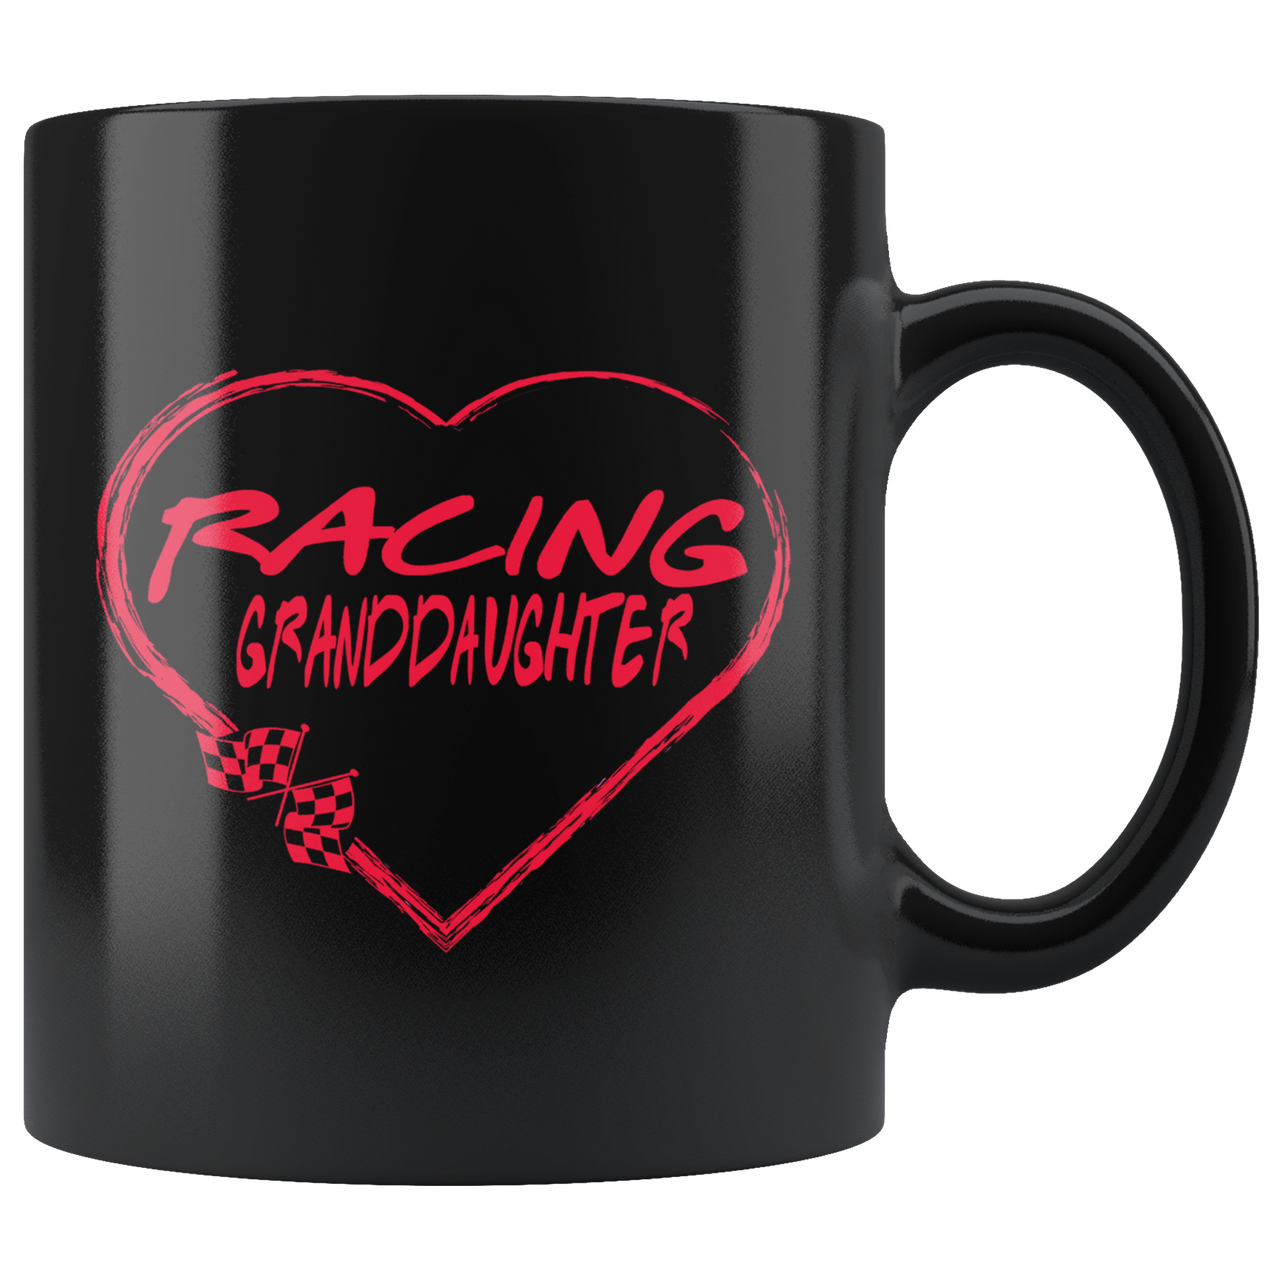 Racing Granddaughter Heart Mug!